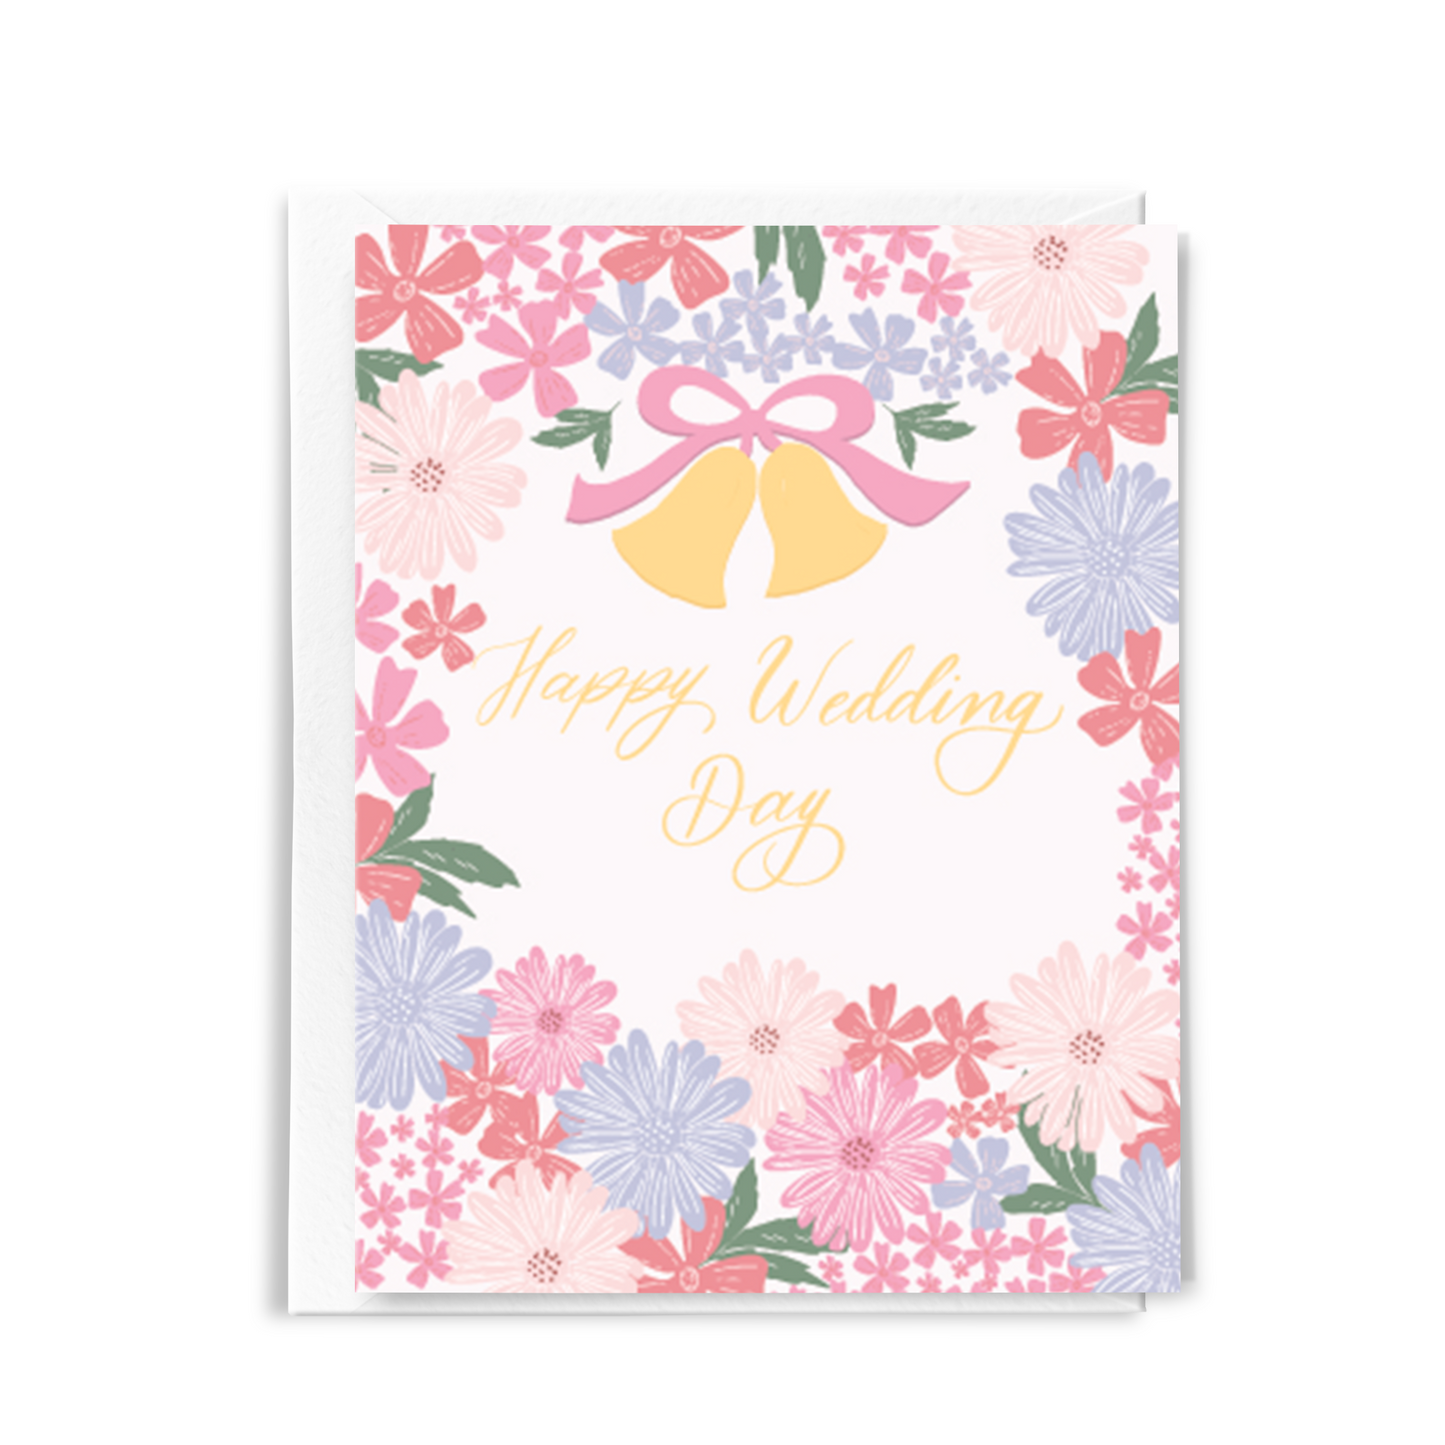 cute pink floral wedding card for friend wedding